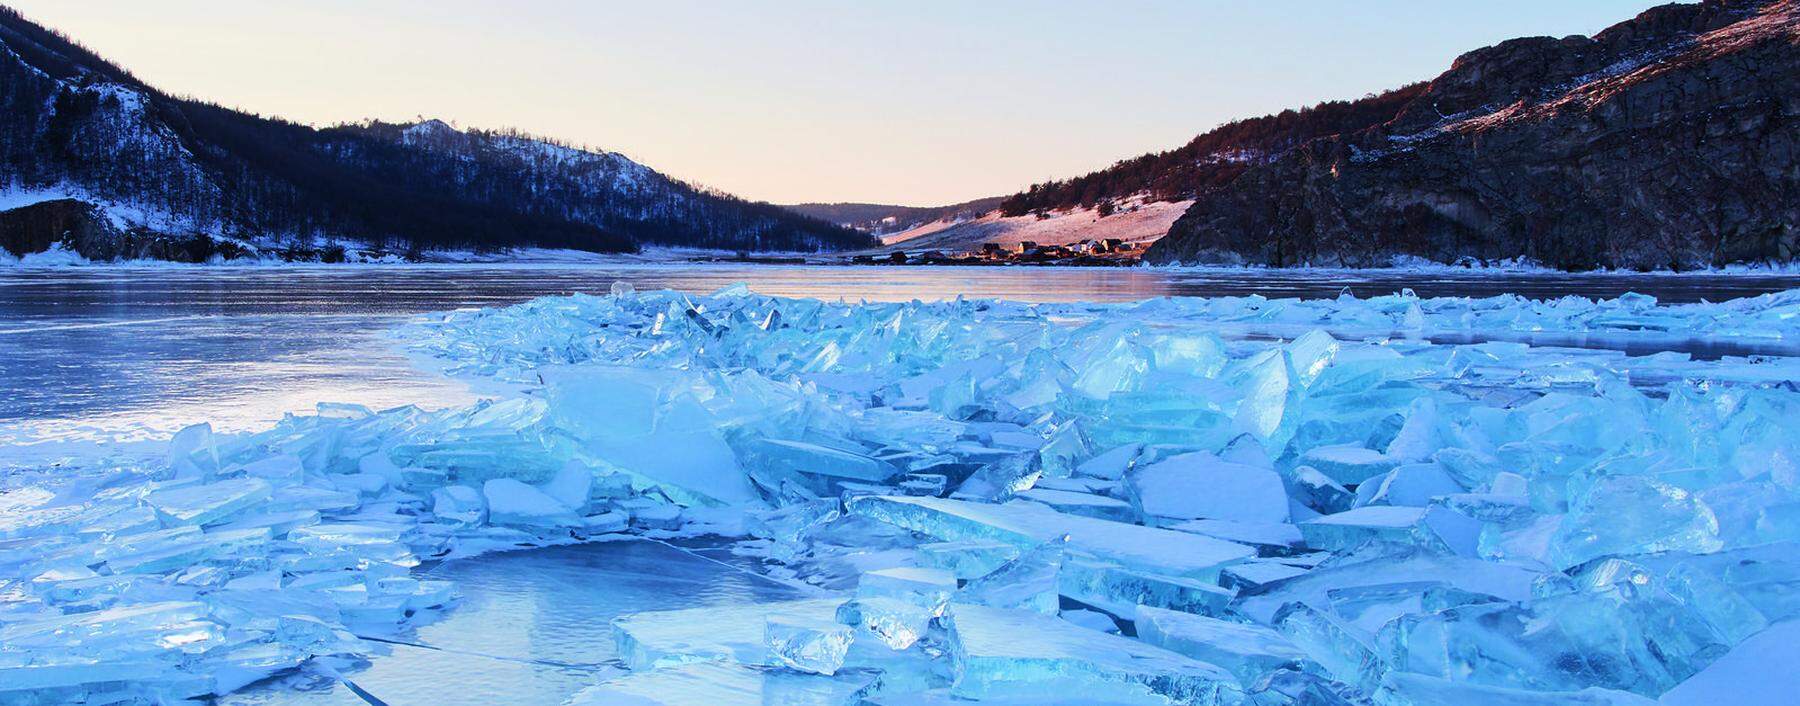 Eisbrocken im russischen Baikalsee, der nicht nur tief, sondern auch uralt ist.